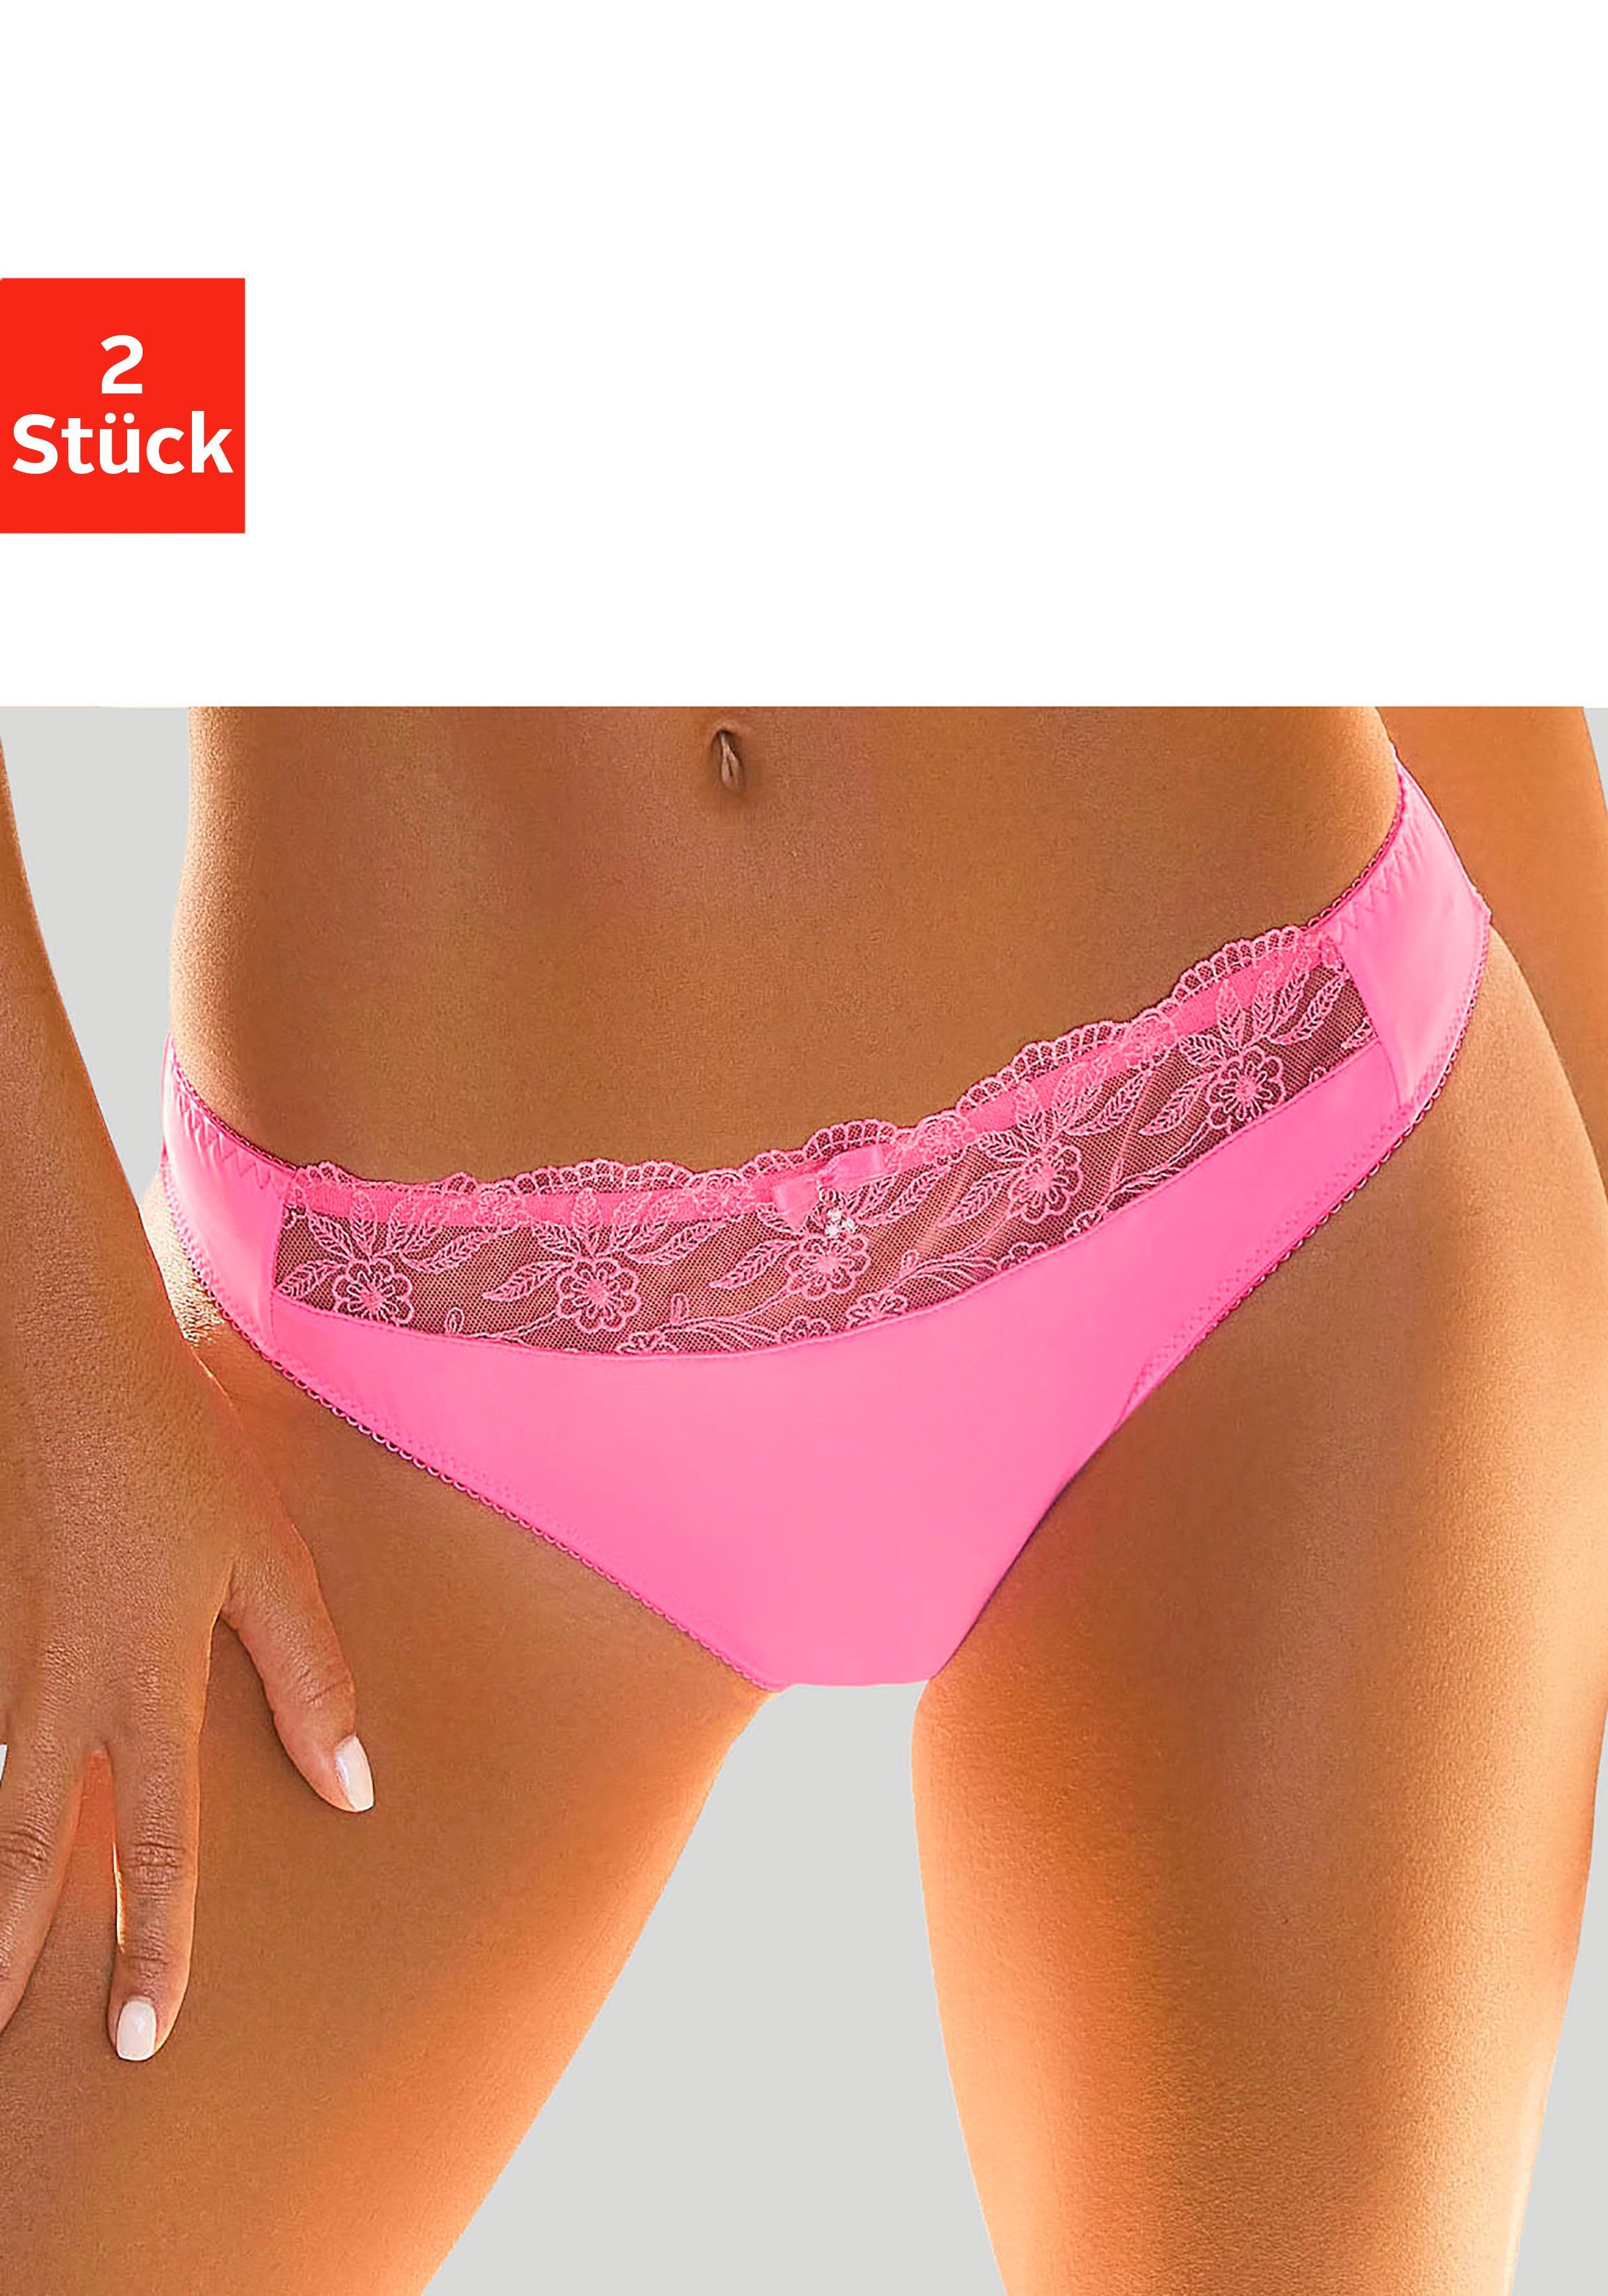 2-St) Slip schöner pink+weiß Stickereispitze Nuance (Packung, mit